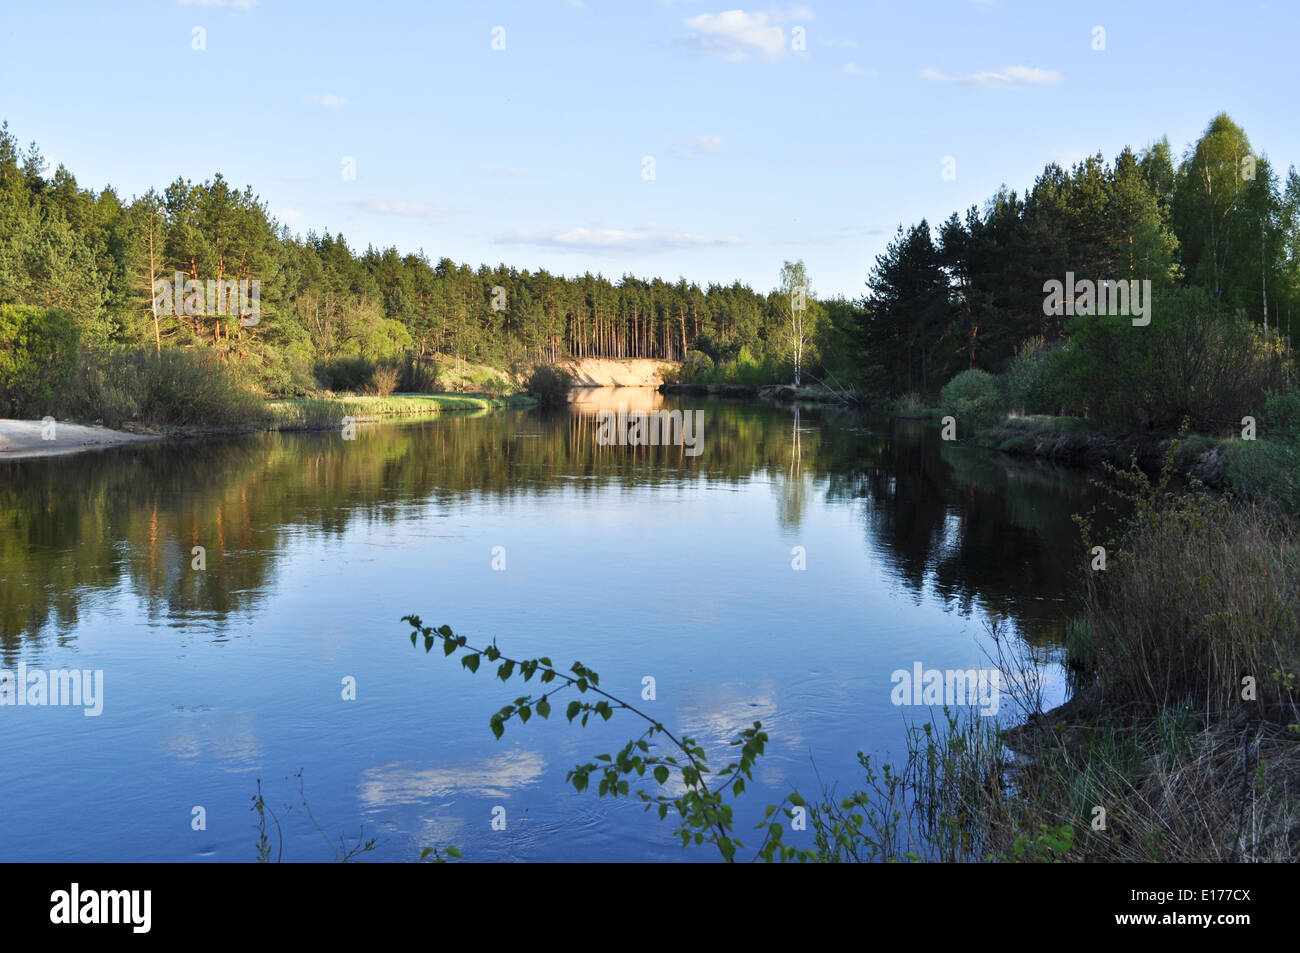 Nationalpark "Meshchera" in der Region Rjasan, Russland. Der Fluss ist im späten Frühjahr von der Sonne beschienen. Stockfoto